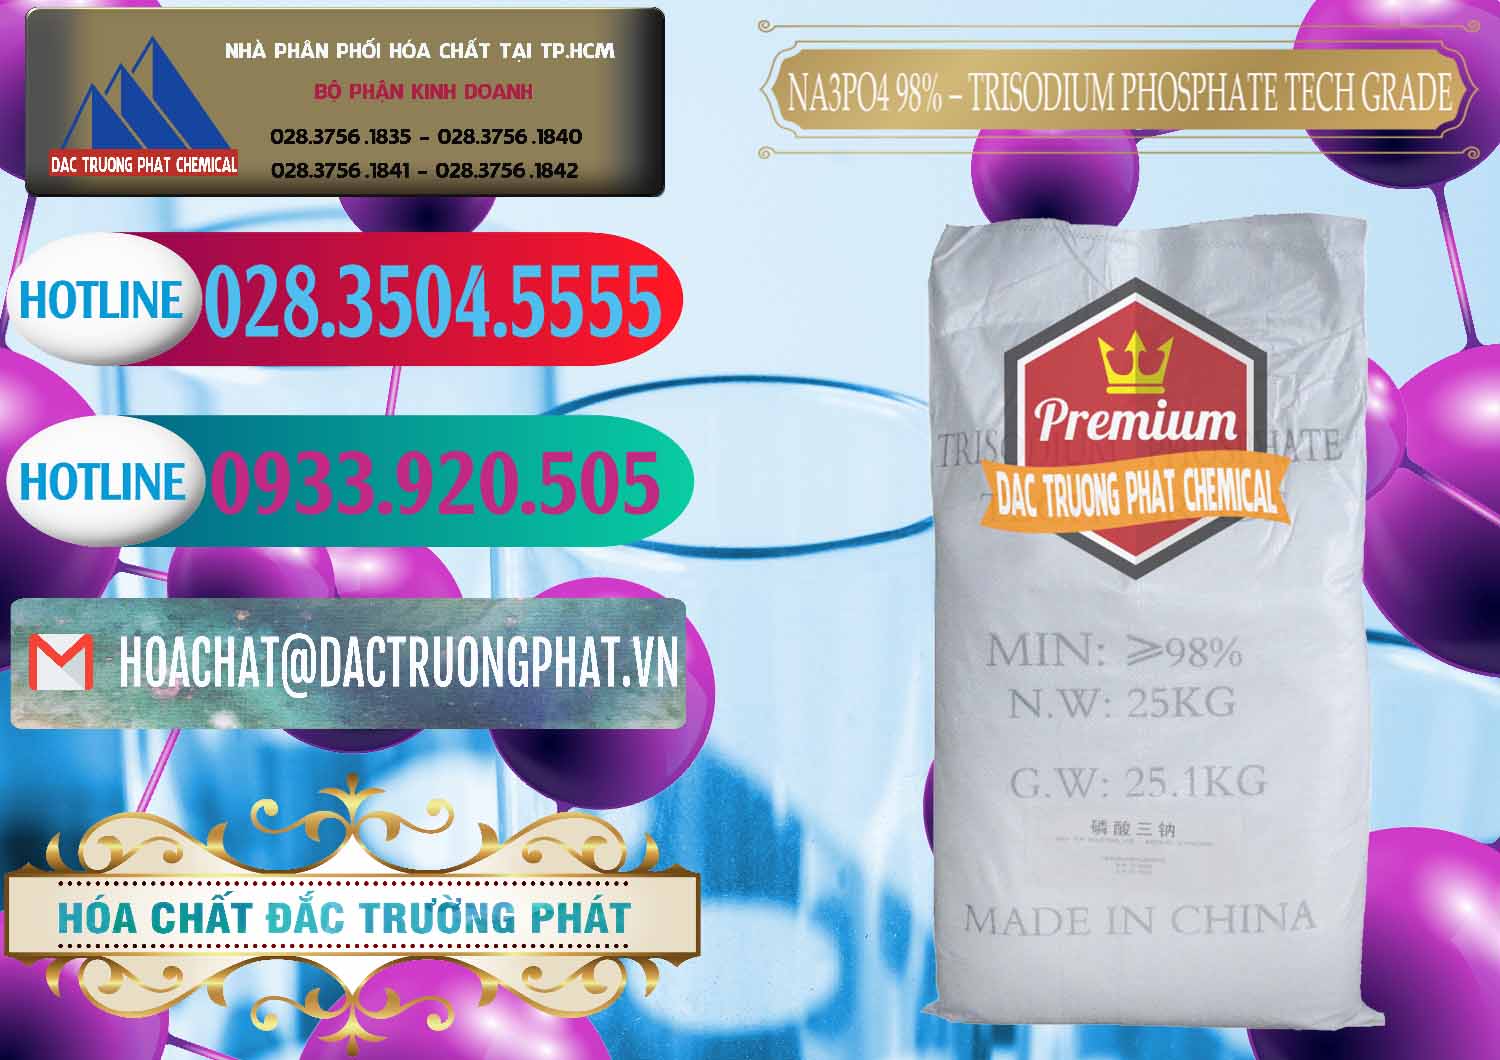 Nơi nhập khẩu ( bán ) Na3PO4 – Trisodium Phosphate 96% Tech Grade Trung Quốc China - 0104 - Công ty cung cấp & nhập khẩu hóa chất tại TP.HCM - truongphat.vn